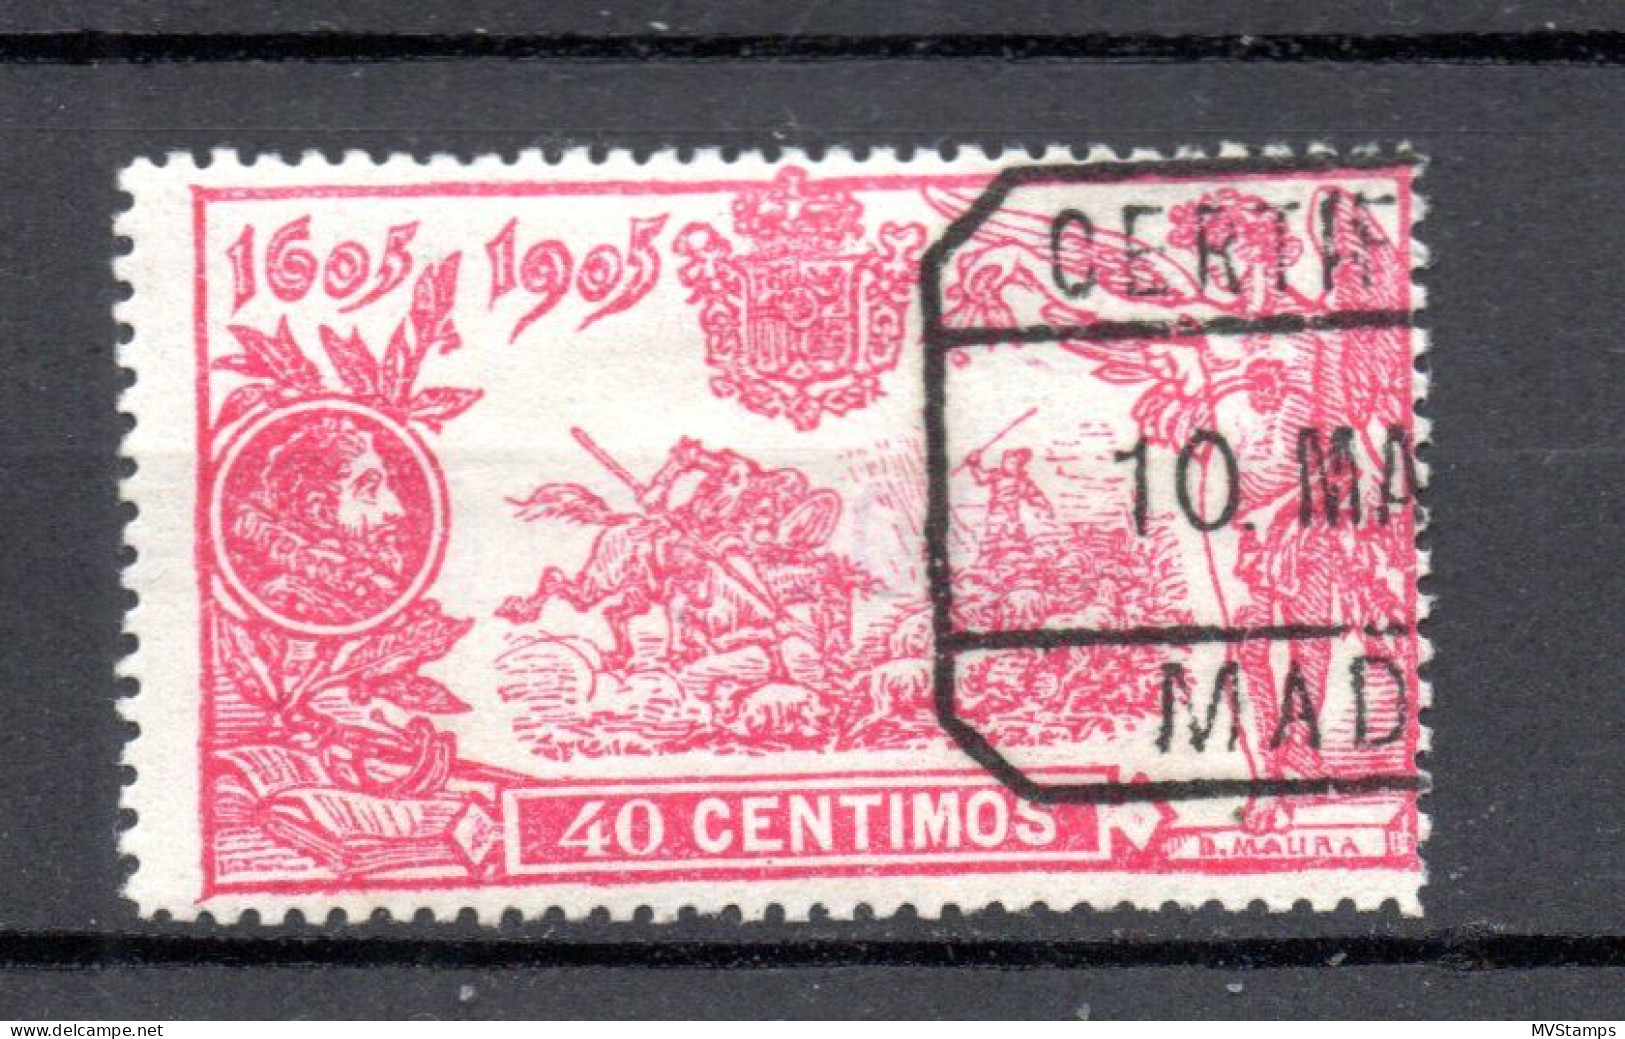 Spanien 1905 Freimarke 225 Don Quijote 40 Centimos Gebraucht - Gebruikt